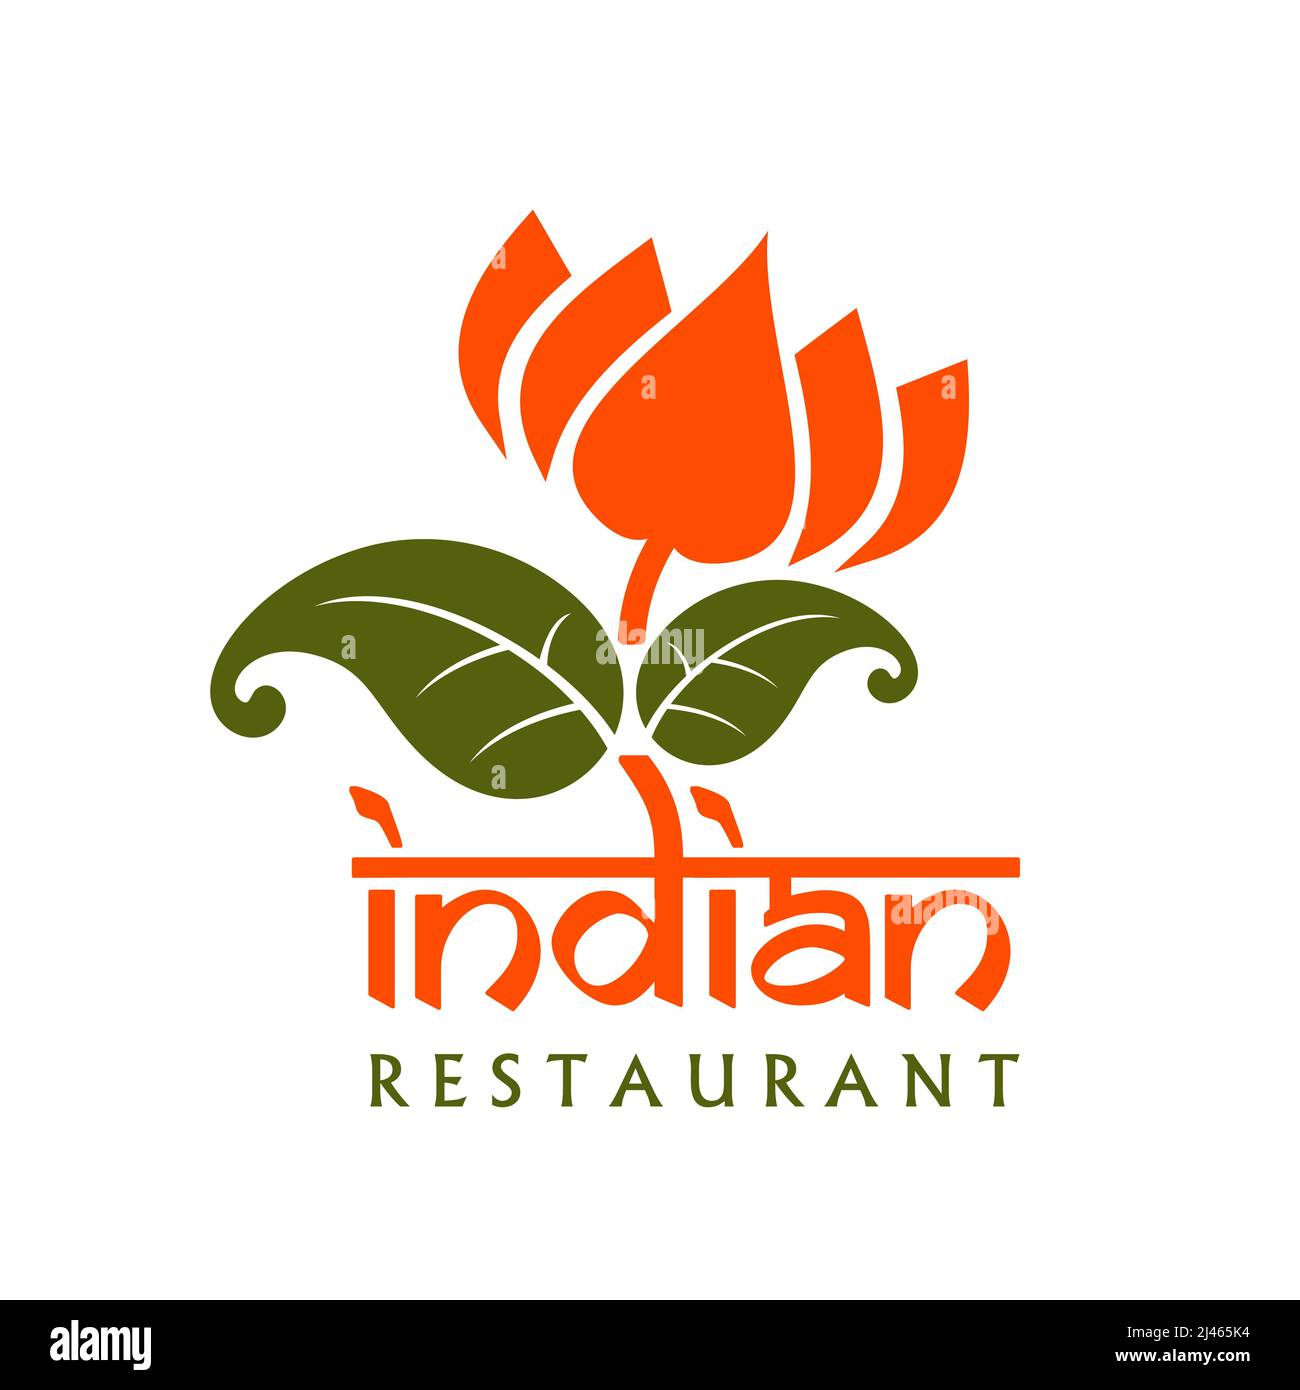 Những hương vị độc đáo và tuyệt vời của Ấn Độ sẽ được tìm thấy trong nhà hàng Ấn Độ tuyệt vời này. Hãy cùng xem hình ảnh để khám phá không gian sang trọng và ấm cúng của nhà hàng Ấn Độ.